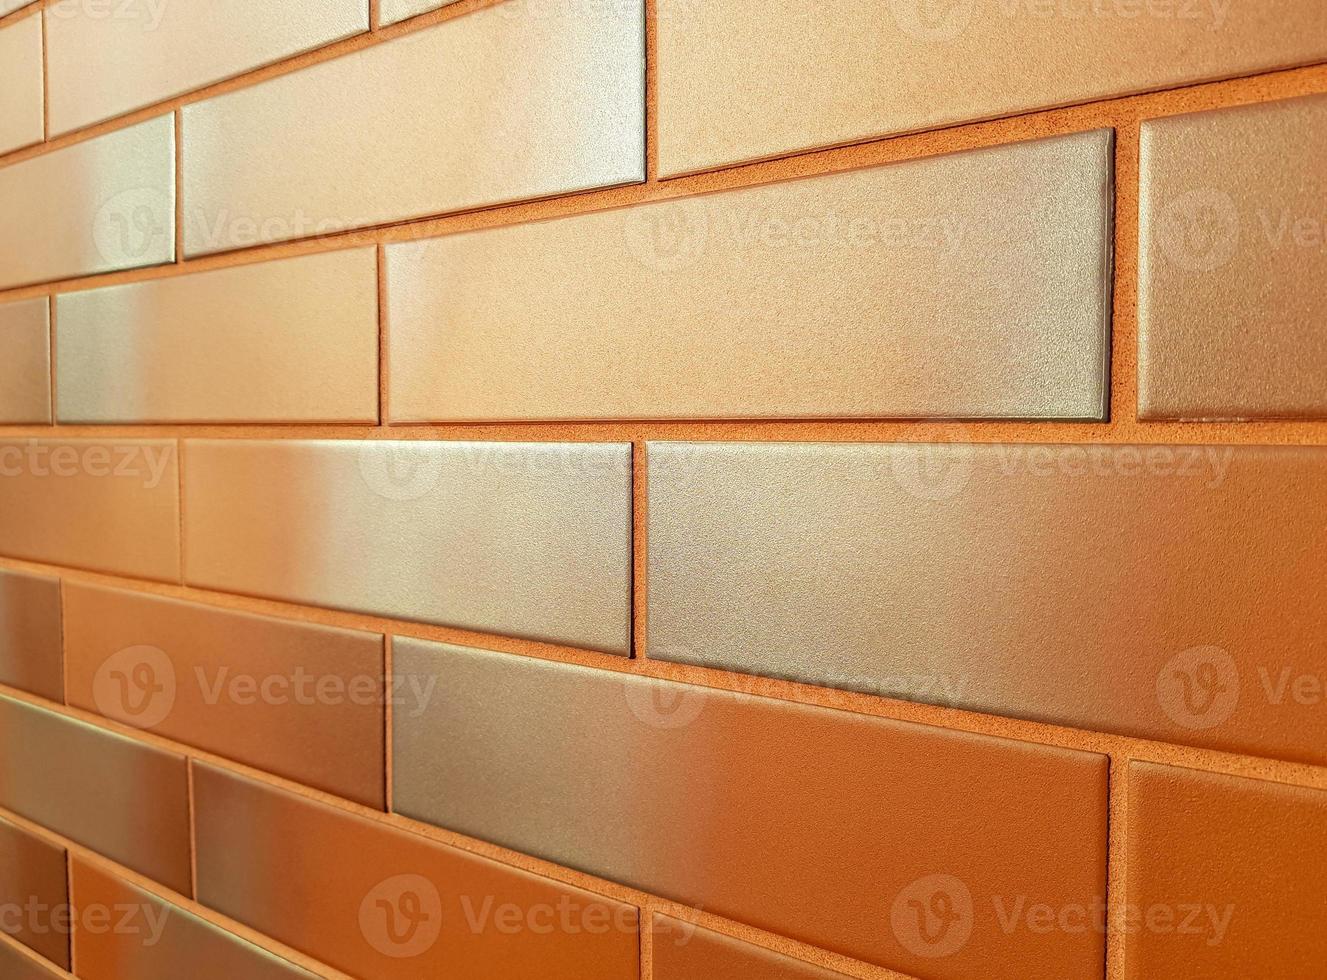 fachada moderna hecha de baldosas de cerámica naranja. nueva pared de ladrillos de color naranja brillante con un tono gris plateado, brillando al sol. perspectiva horizontal retrocediendo en la distancia. espacio de copia de fondo. foto